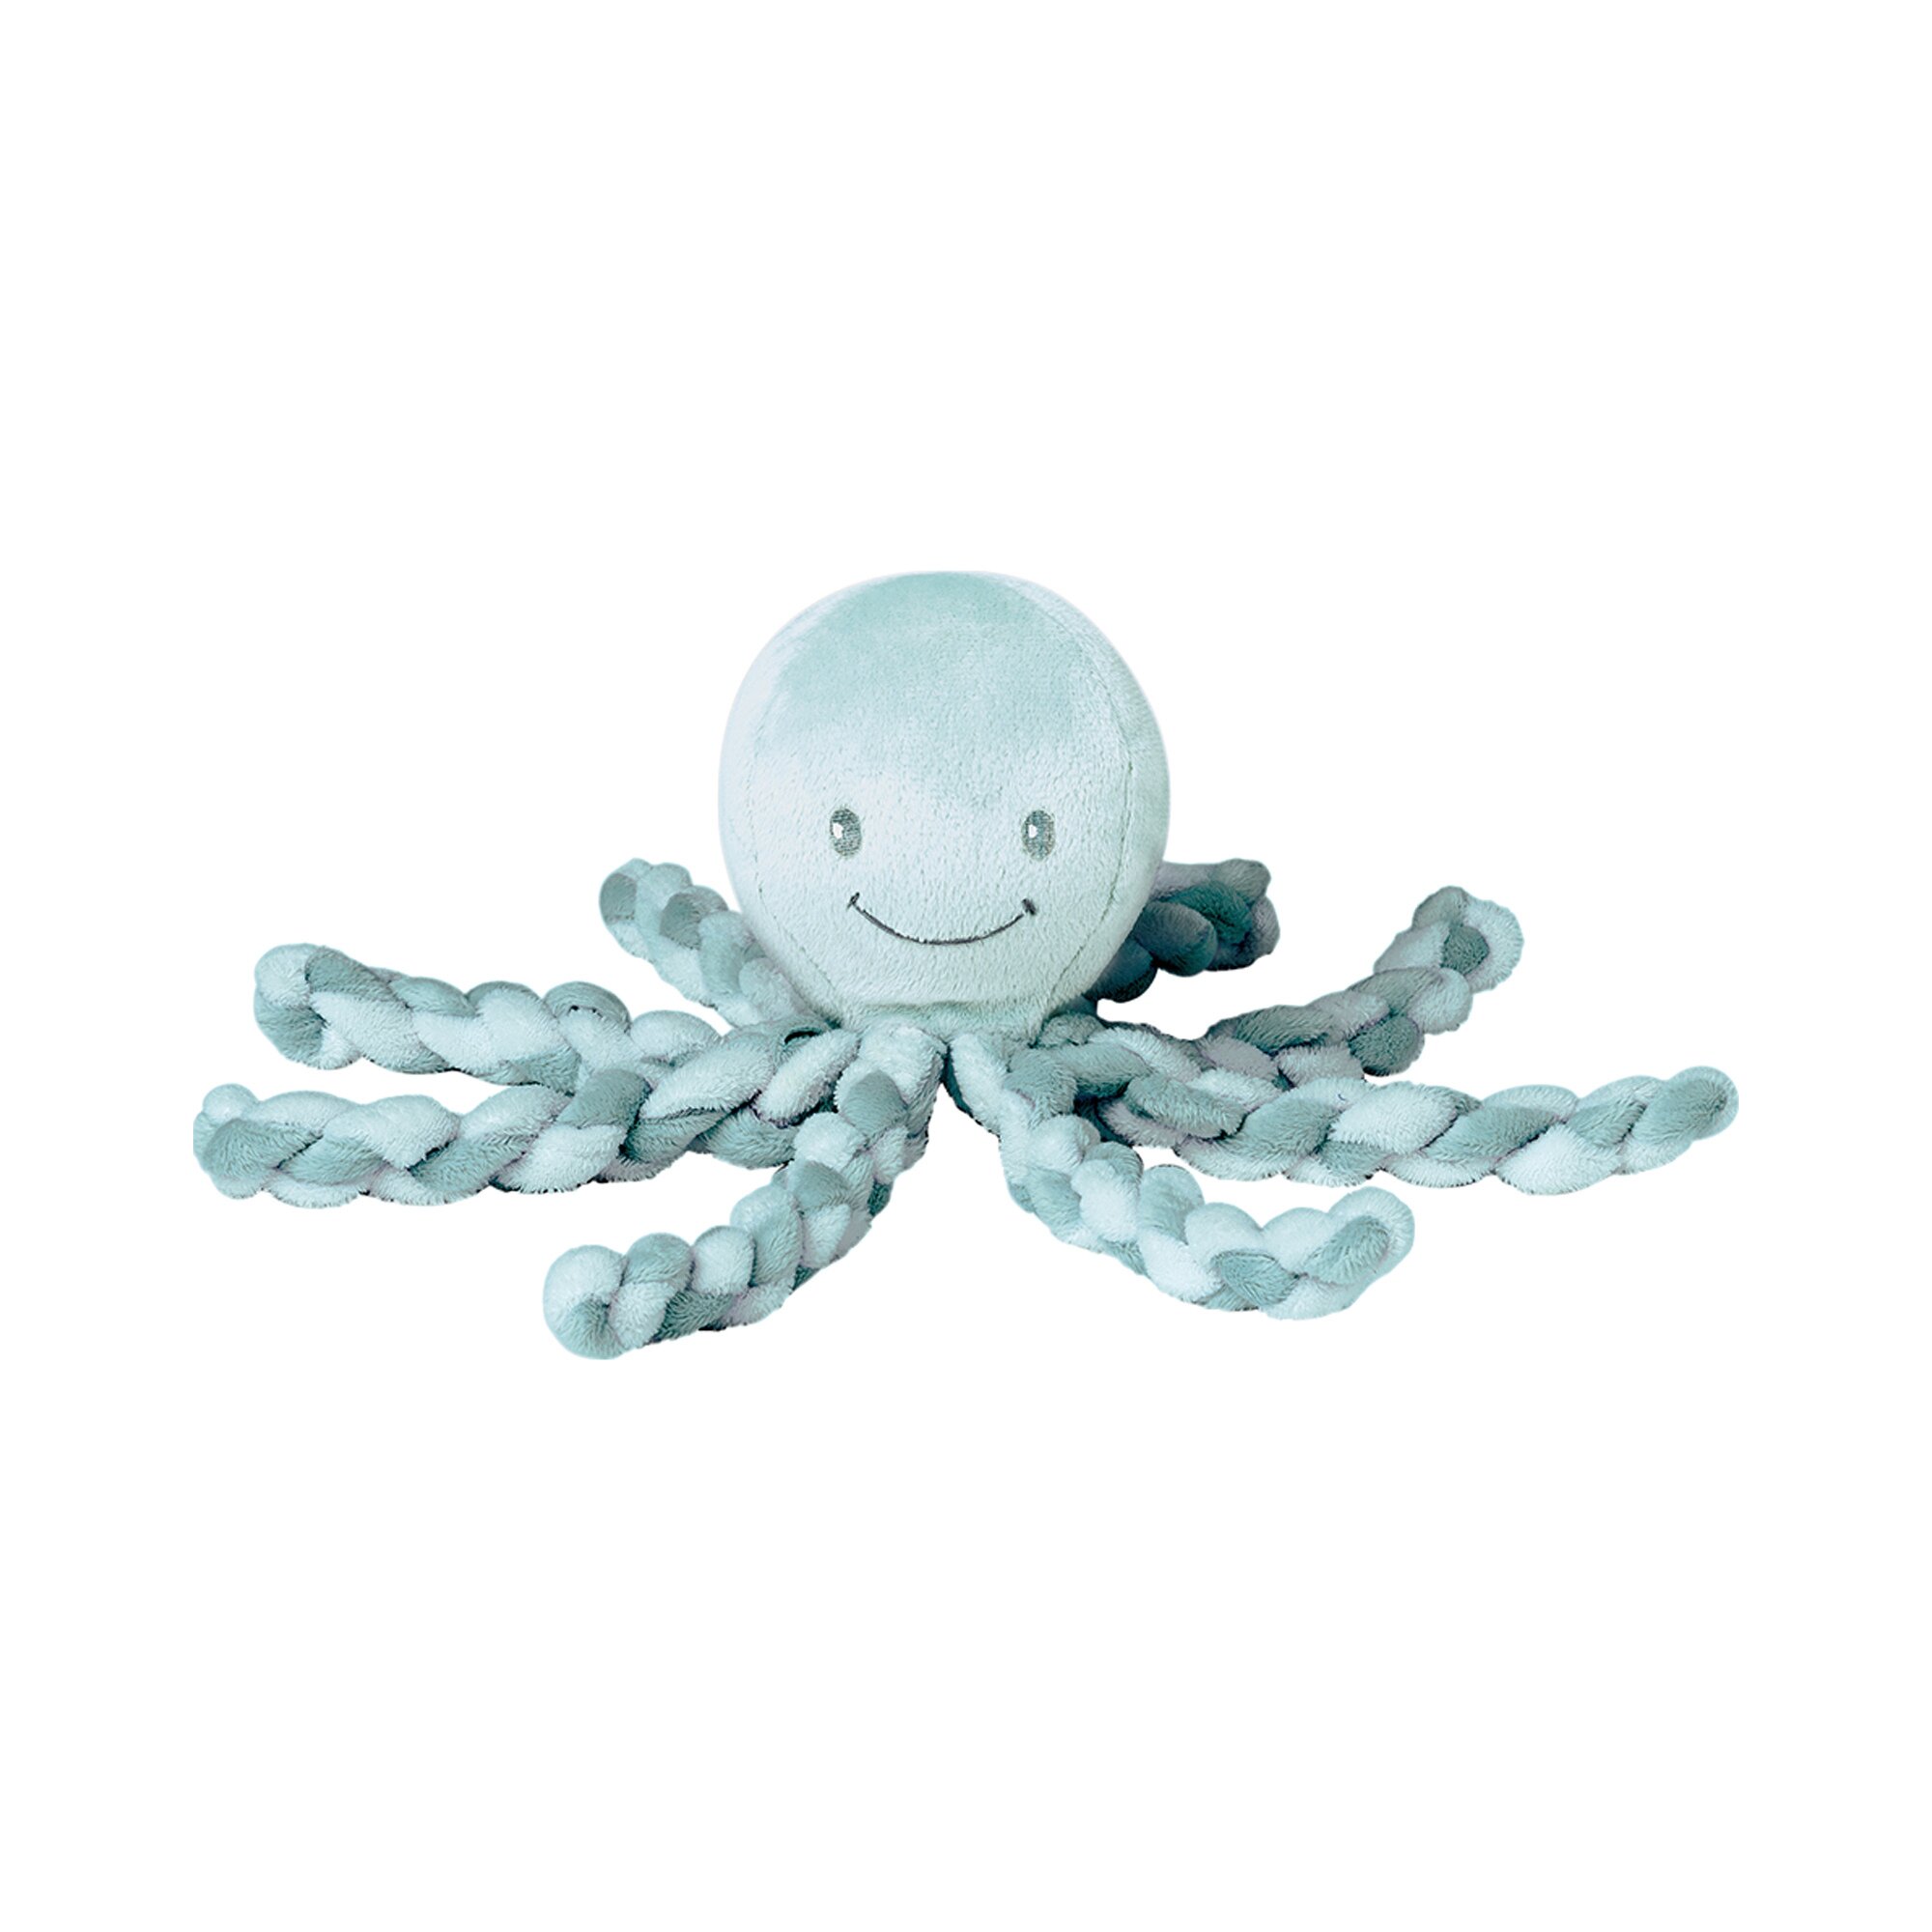 Nattou Kuscheltier Oktopus, Für Neugeborene und Frühchen, 23 cm, Weiß/Grau